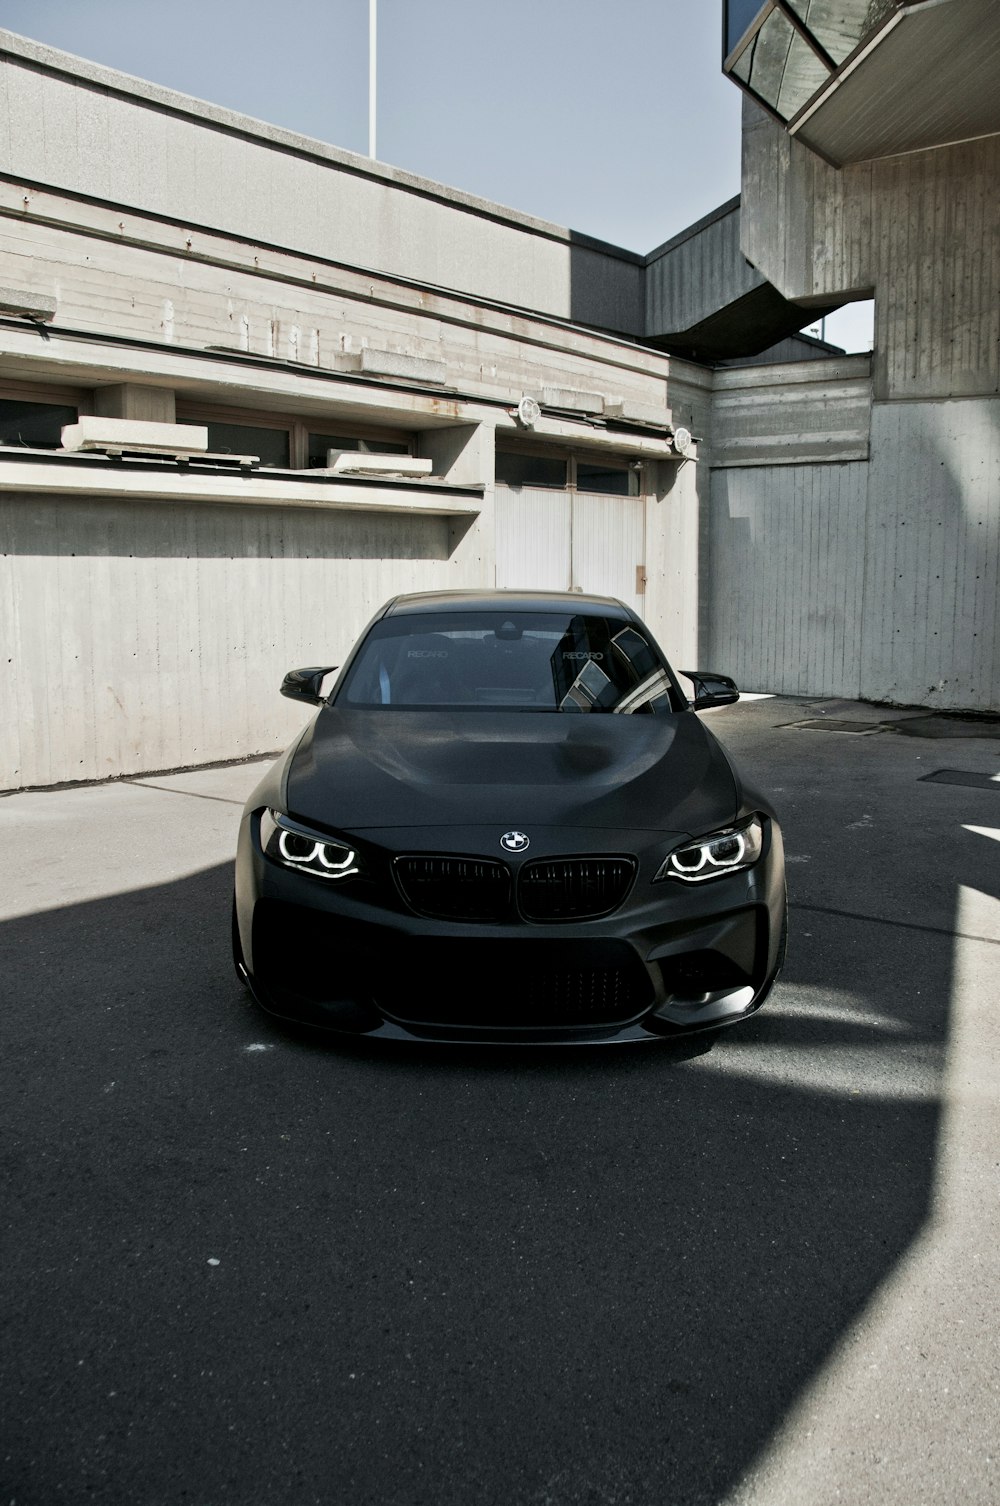 Auto BMW nera parcheggiata sul pavimento di cemento grigio durante il giorno